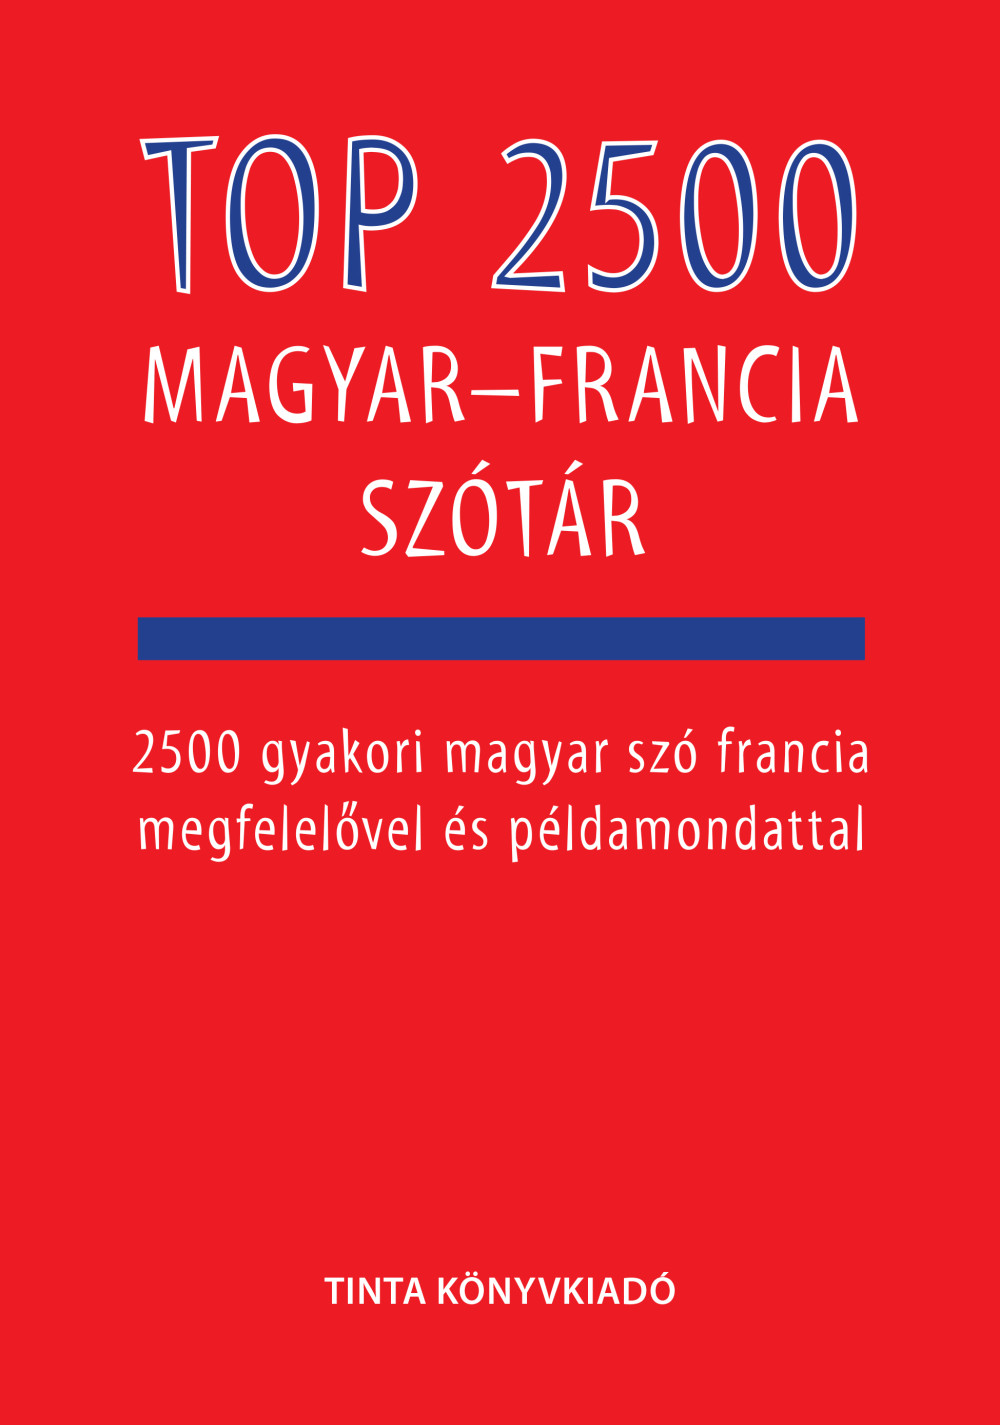 top_2500_magyar_francia_szotar.jpg